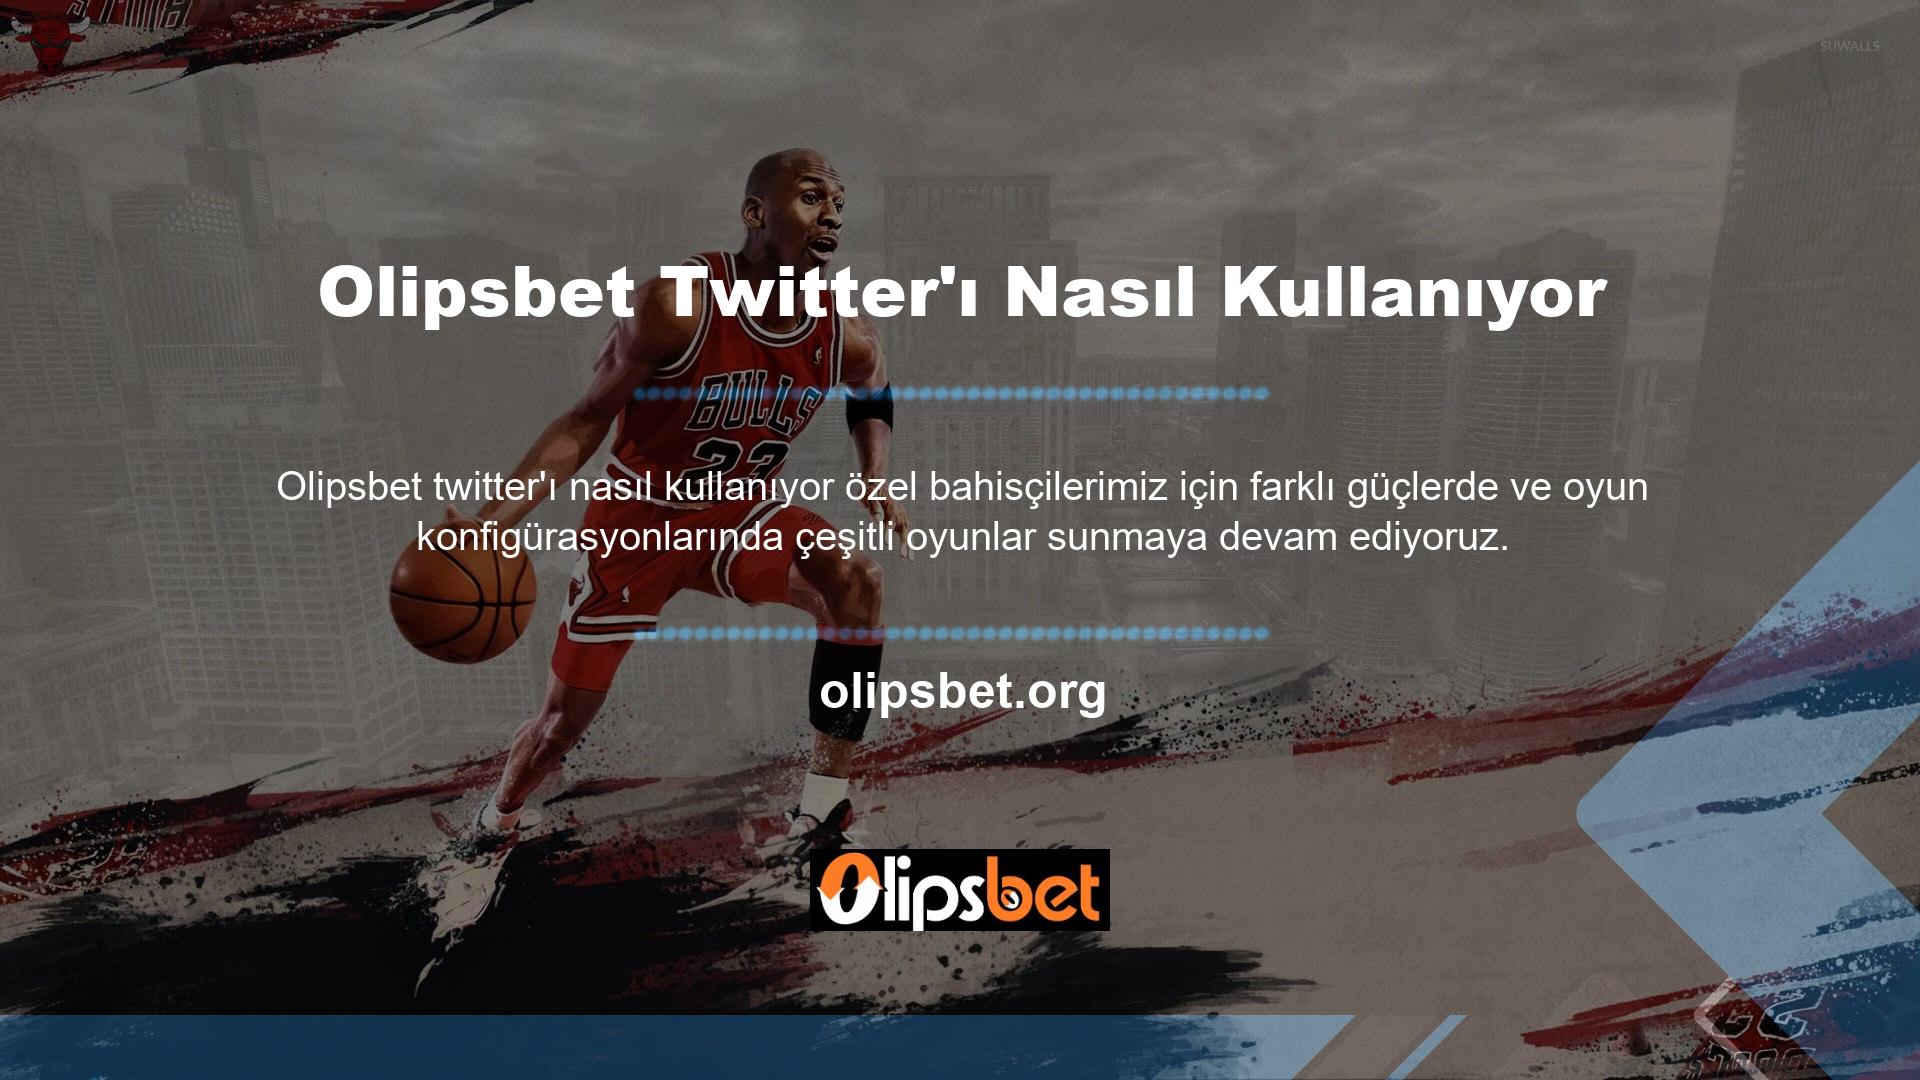 24 saat içinde Olipsbet Twitter hesabından ödeme yapılmadığı takdirde ilk yatırımınız dışında kullanamazsınız